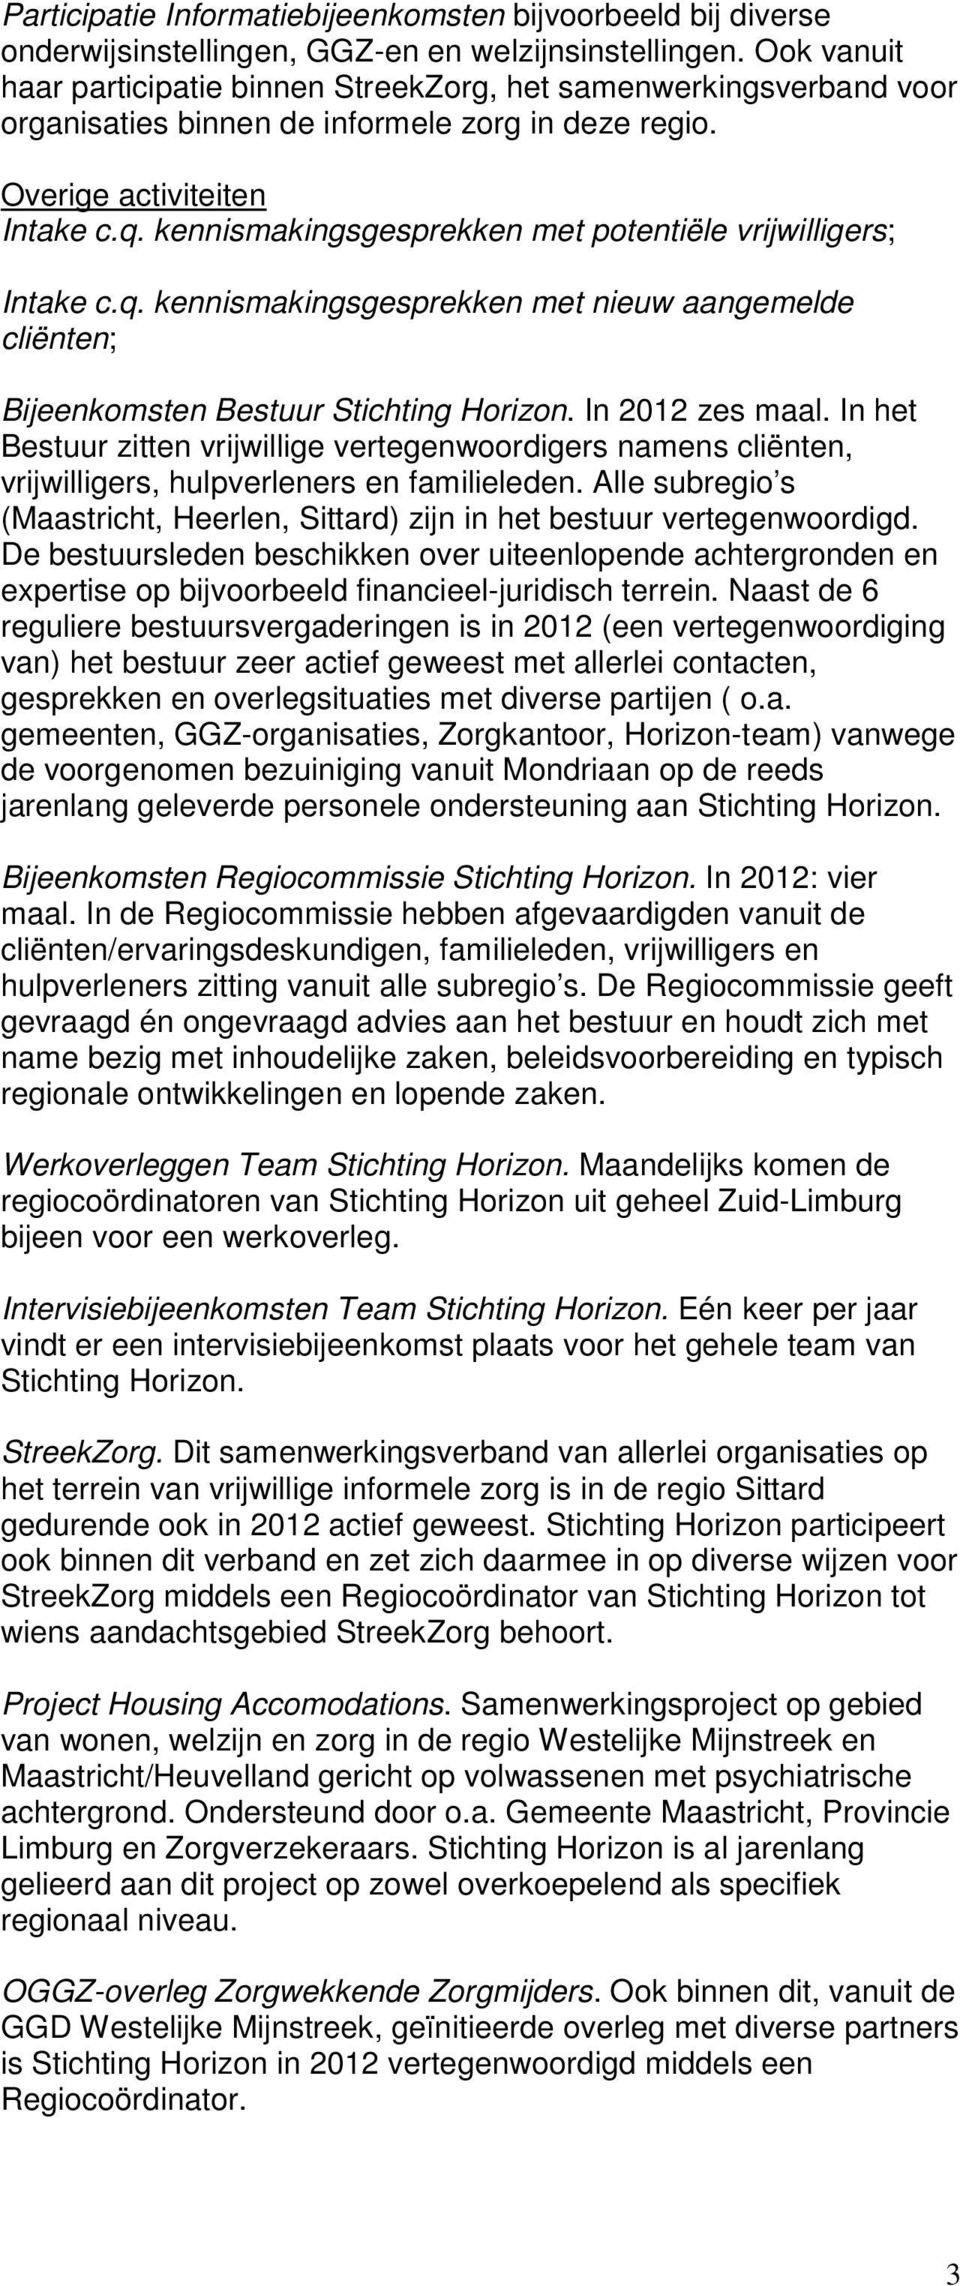 kennismakingsgesprekken met potentiële vrijwilligers; Intake c.q. kennismakingsgesprekken met nieuw aangemelde cliënten; Bijeenkomsten Bestuur Stichting Horizon. In 2012 zes maal.